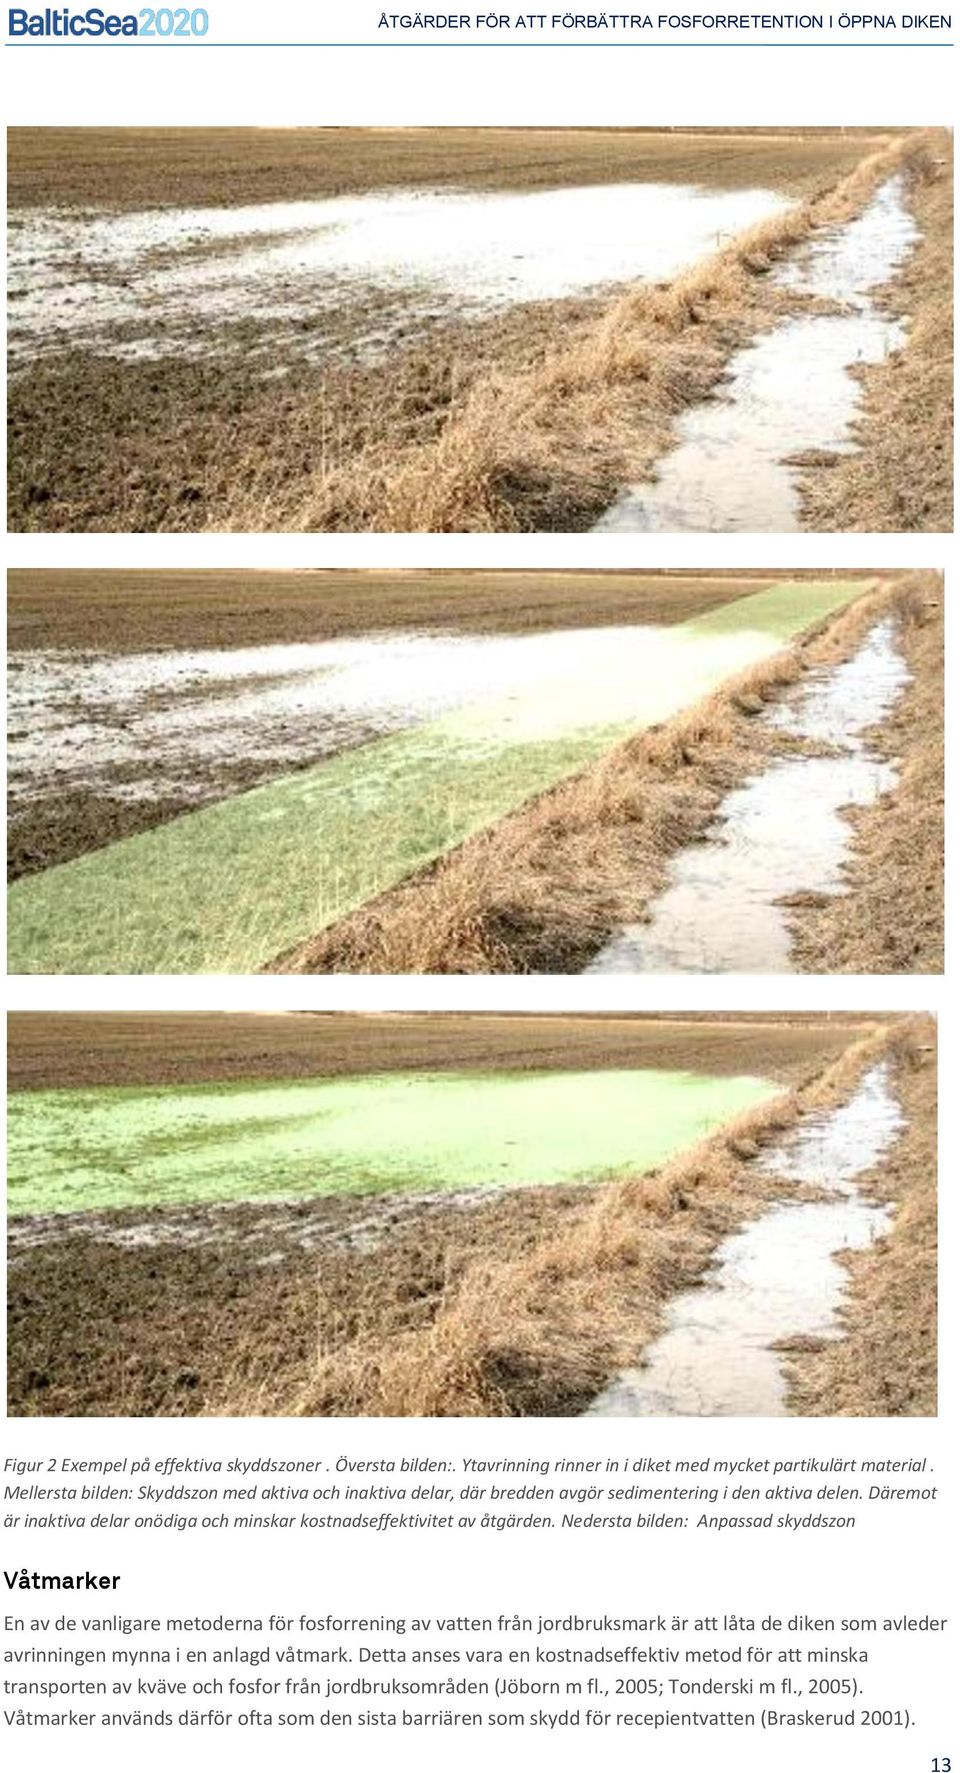 Nedersta bilden: Anpassad skyddszon Våtmarker En av de vanligare metoderna för fosforrening av vatten från jordbruksmark är att låta de diken som avleder avrinningen mynna i en anlagd våtmark.